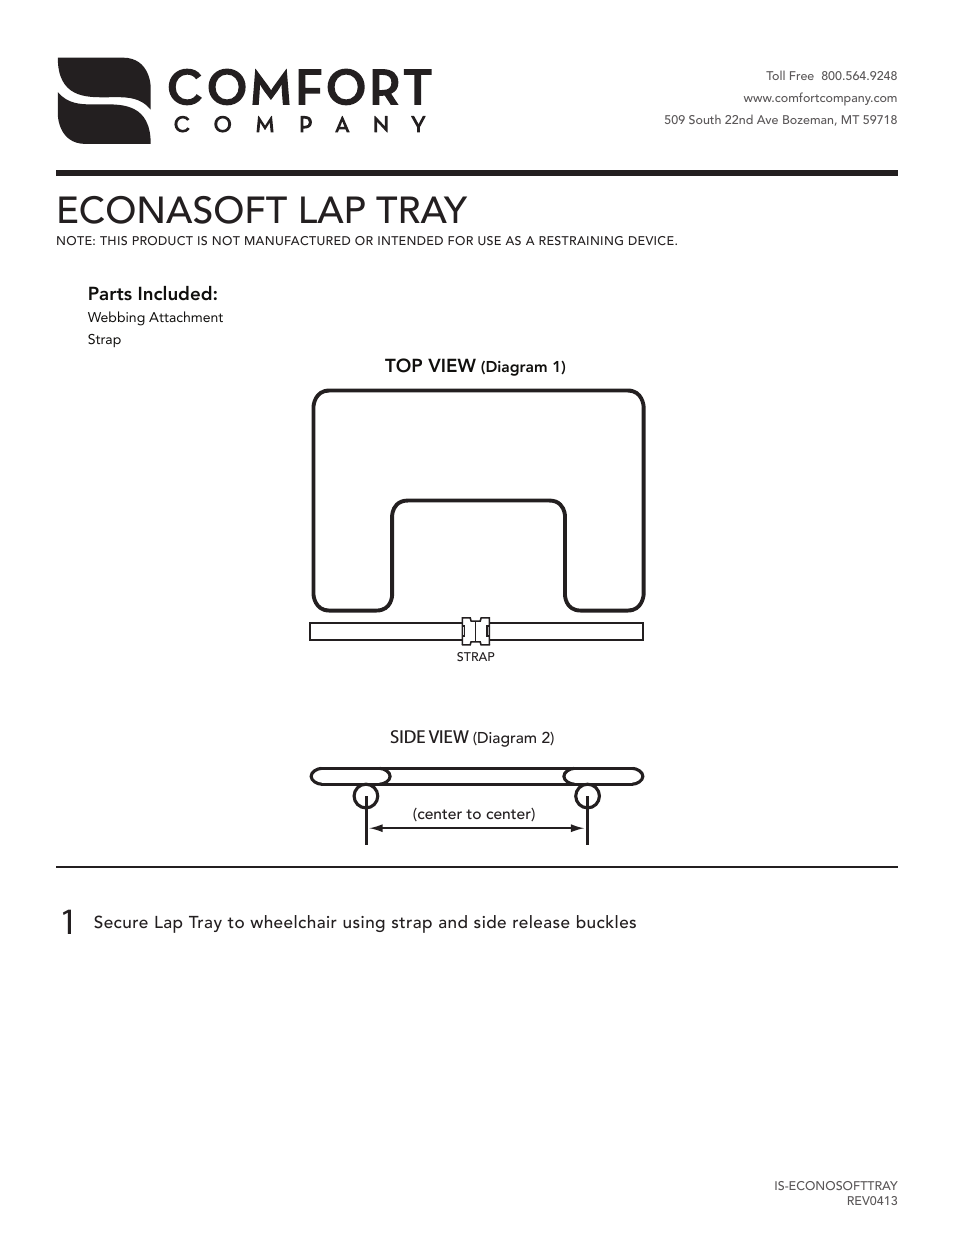 Econasoft Lap Tray